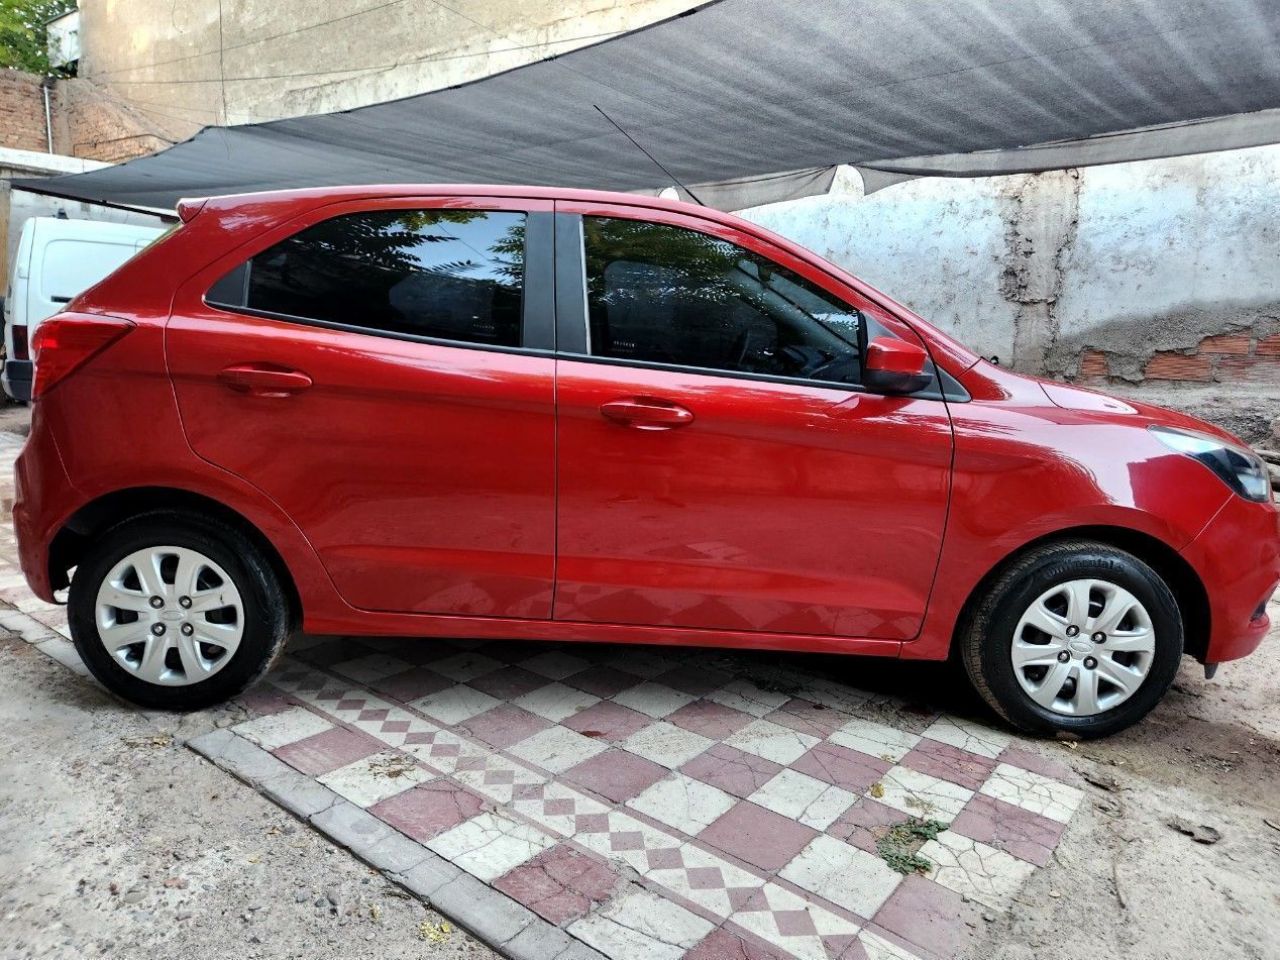 Ford Ka Usado en Mendoza, deRuedas